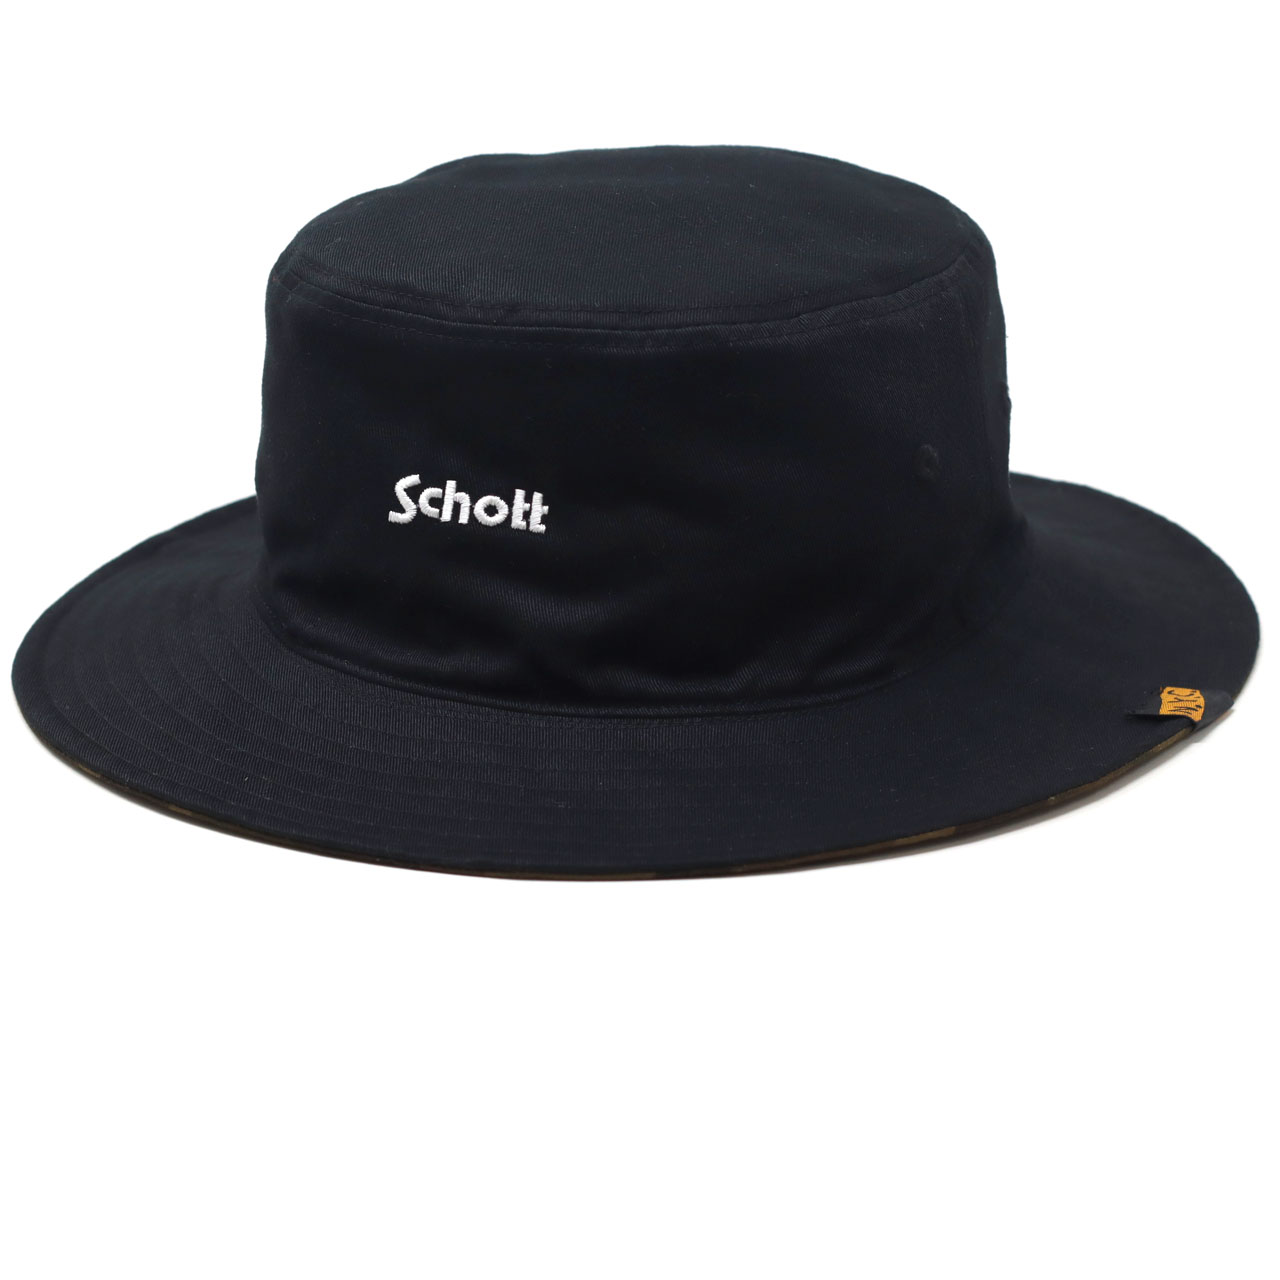 リバーシブル帽子 ツイル ハット メンズ Schott N.Y.C. バケットハット 